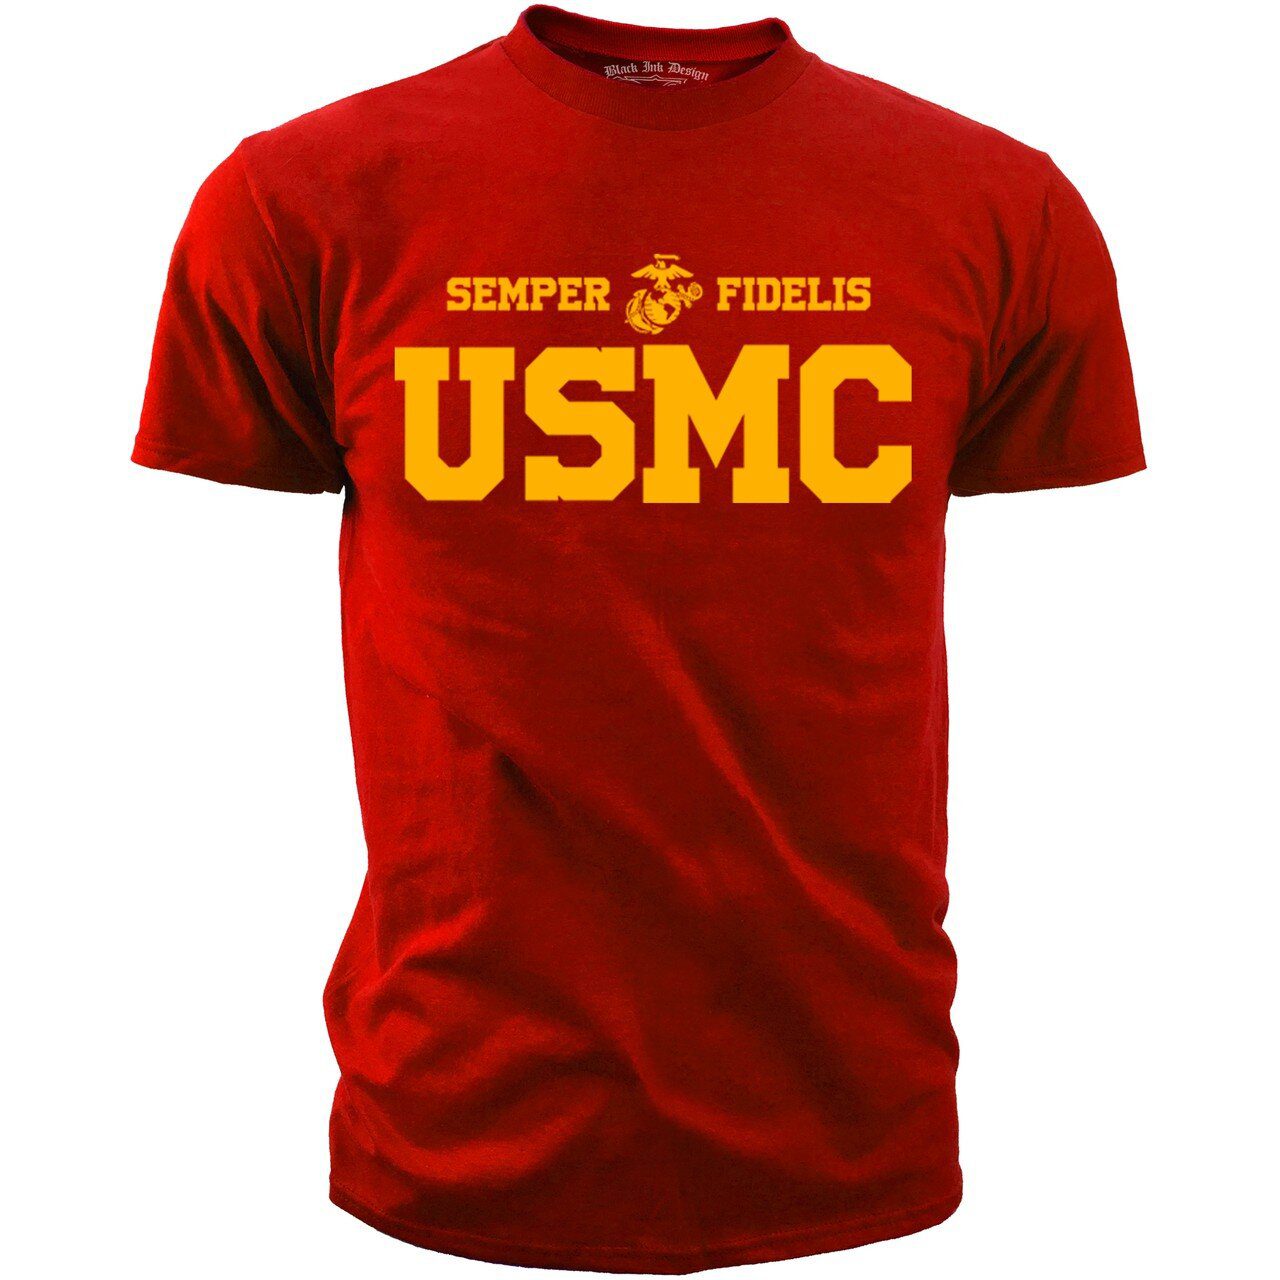 Semper Fidelis USMC Tshirt